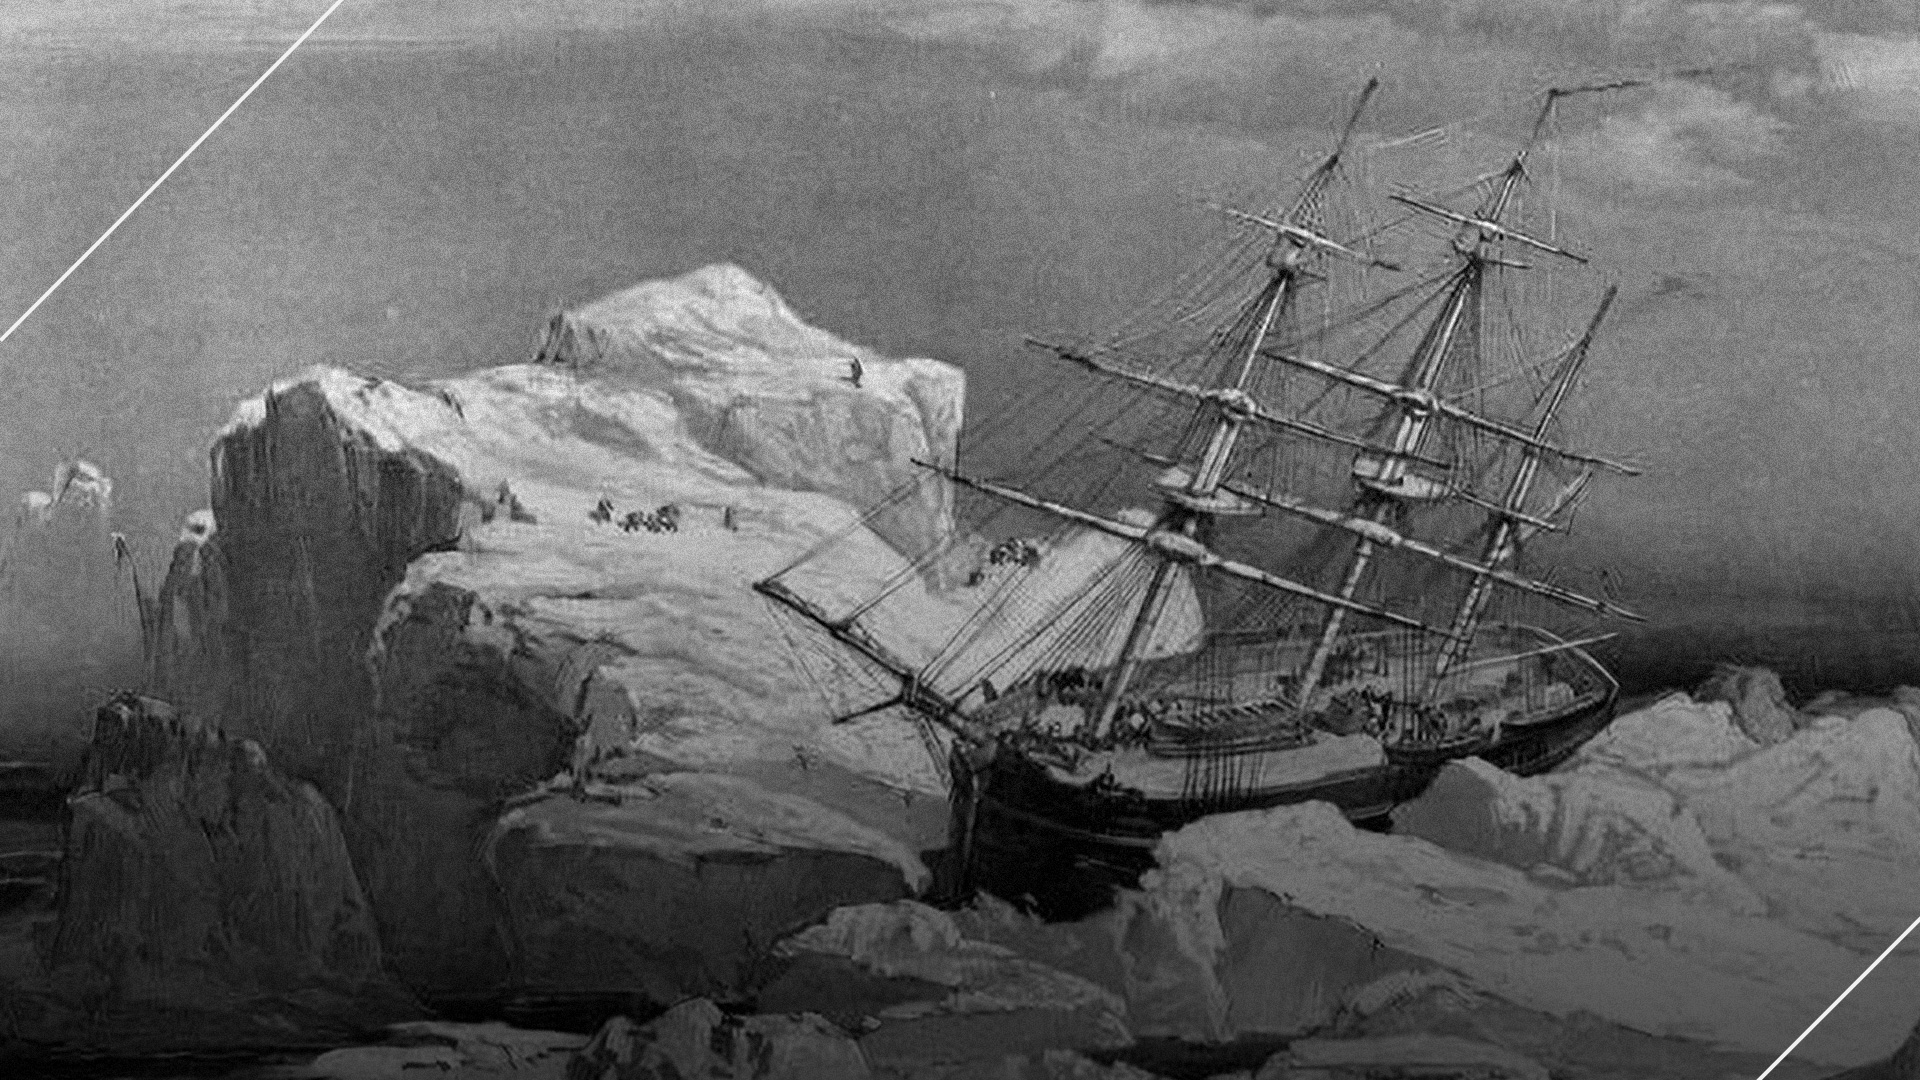 A Incrível Viagem de Shackleton